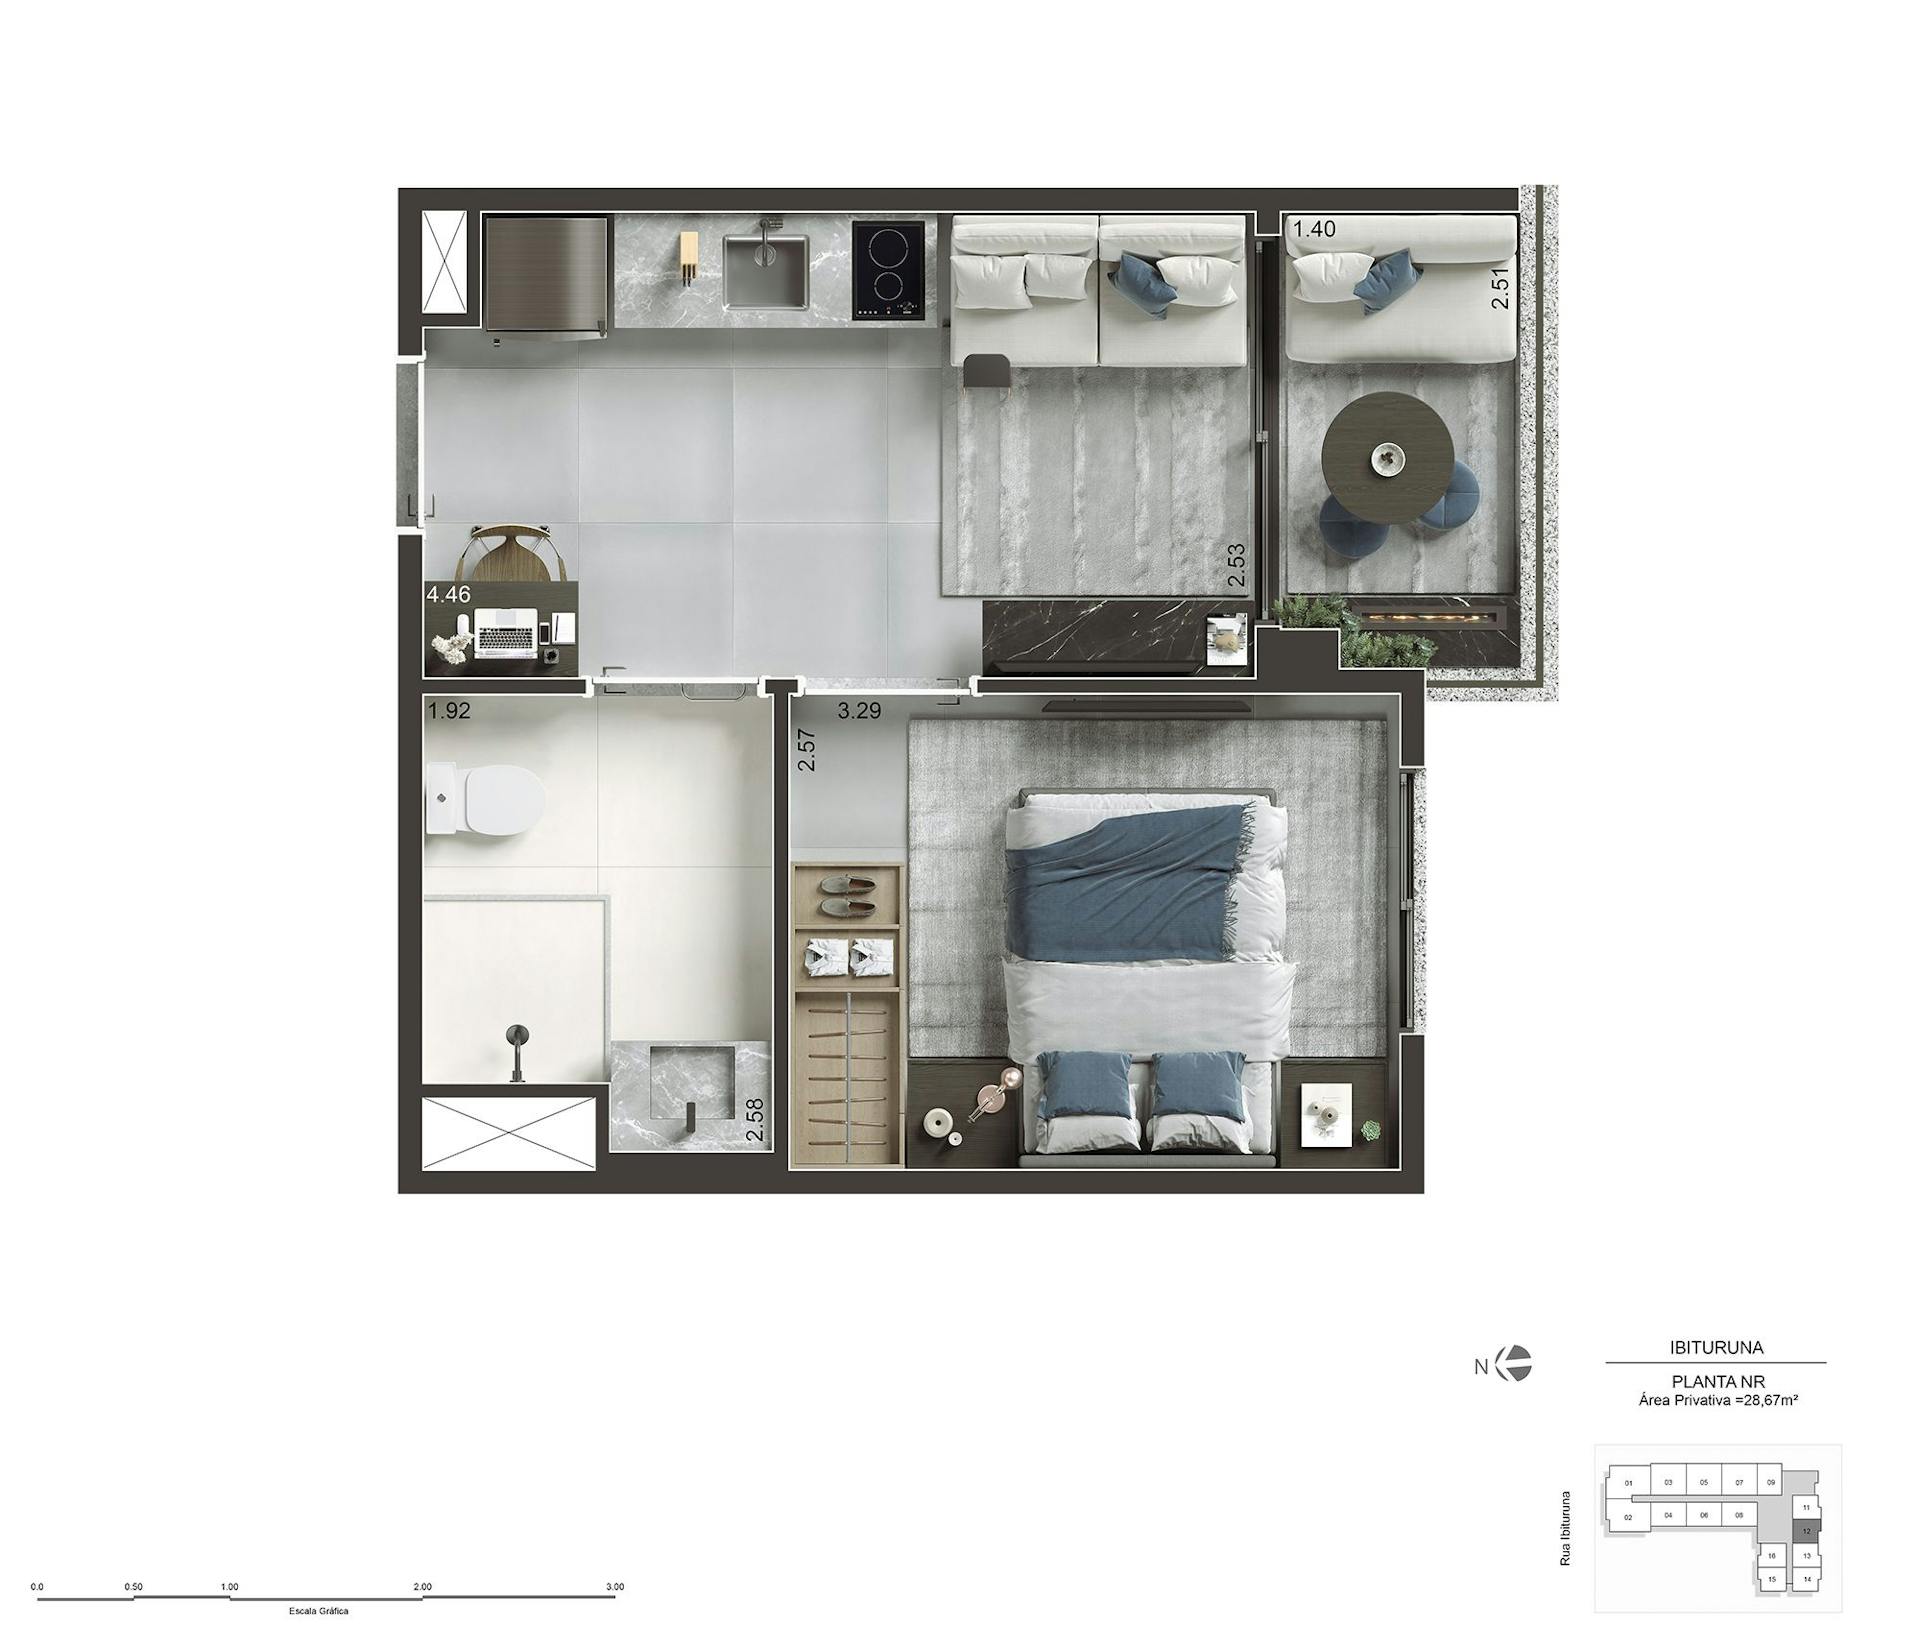 Perspectiva artística do apartamento NR de 28m² - Final 12